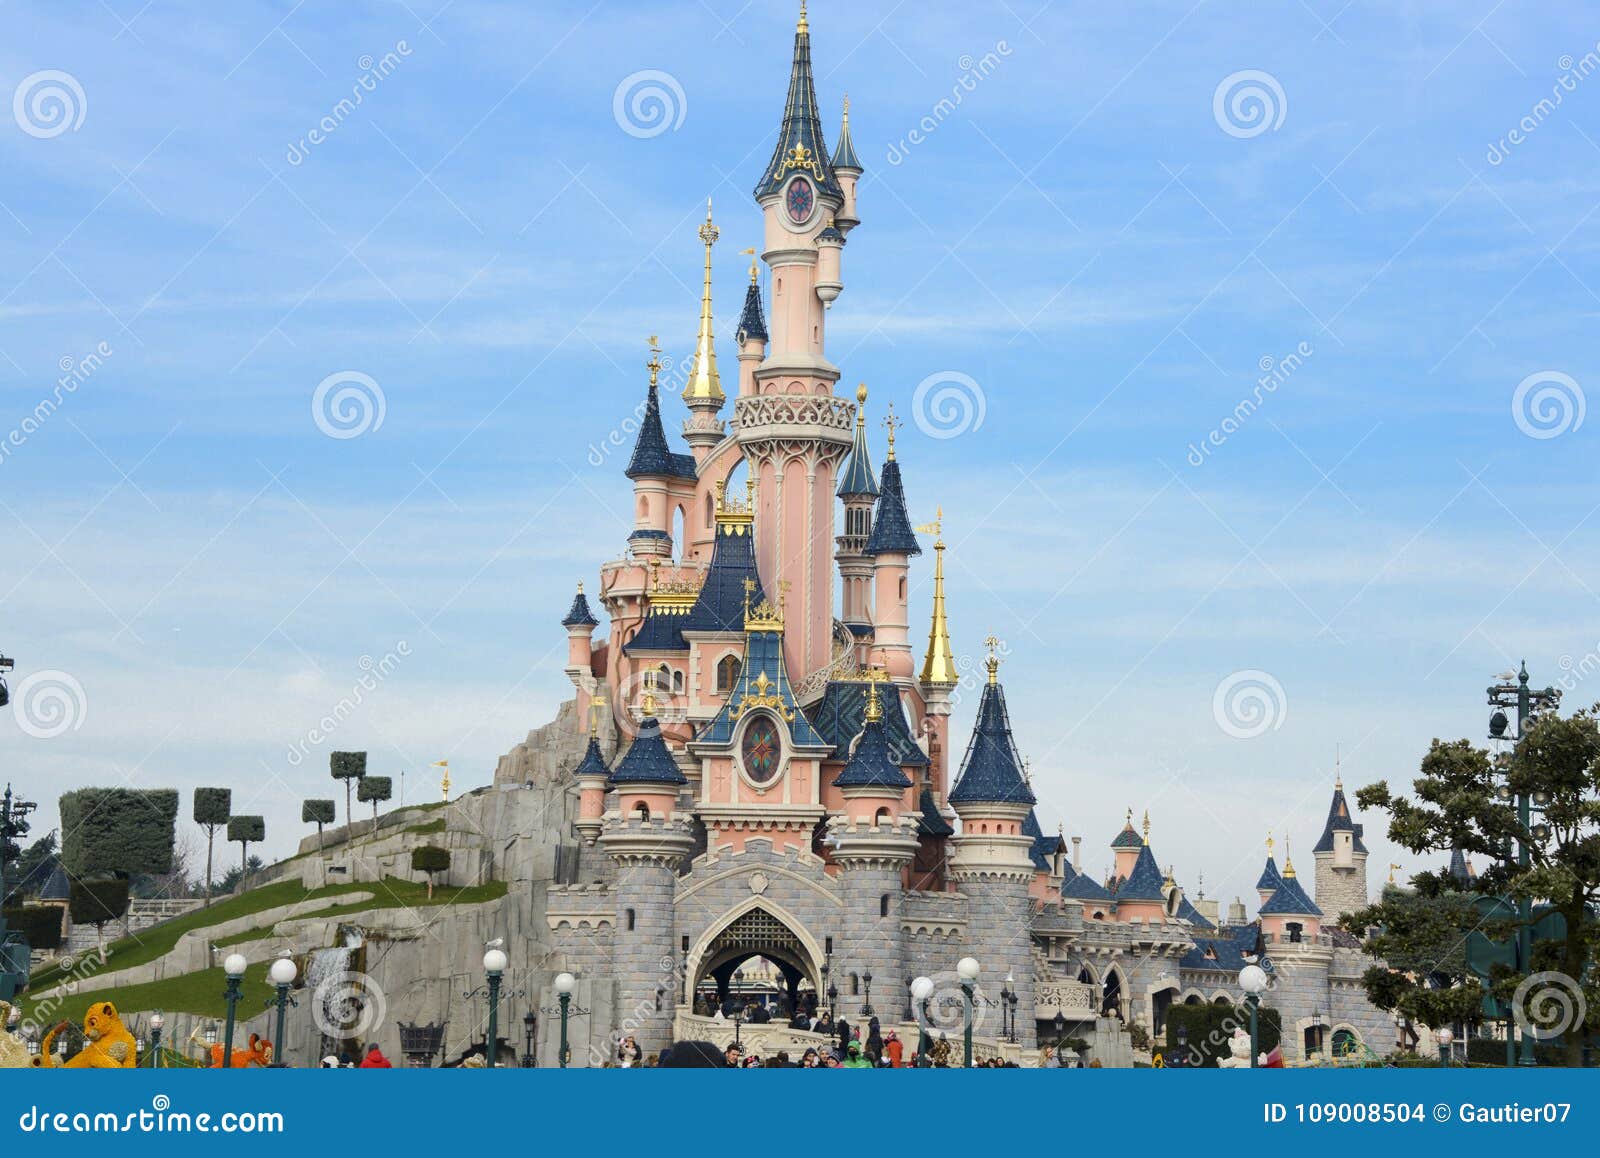 Castello Della Bella Addormentata In Disneyland Parigi Immagine Stock Editoriale Immagine Di Bambini Bellezza